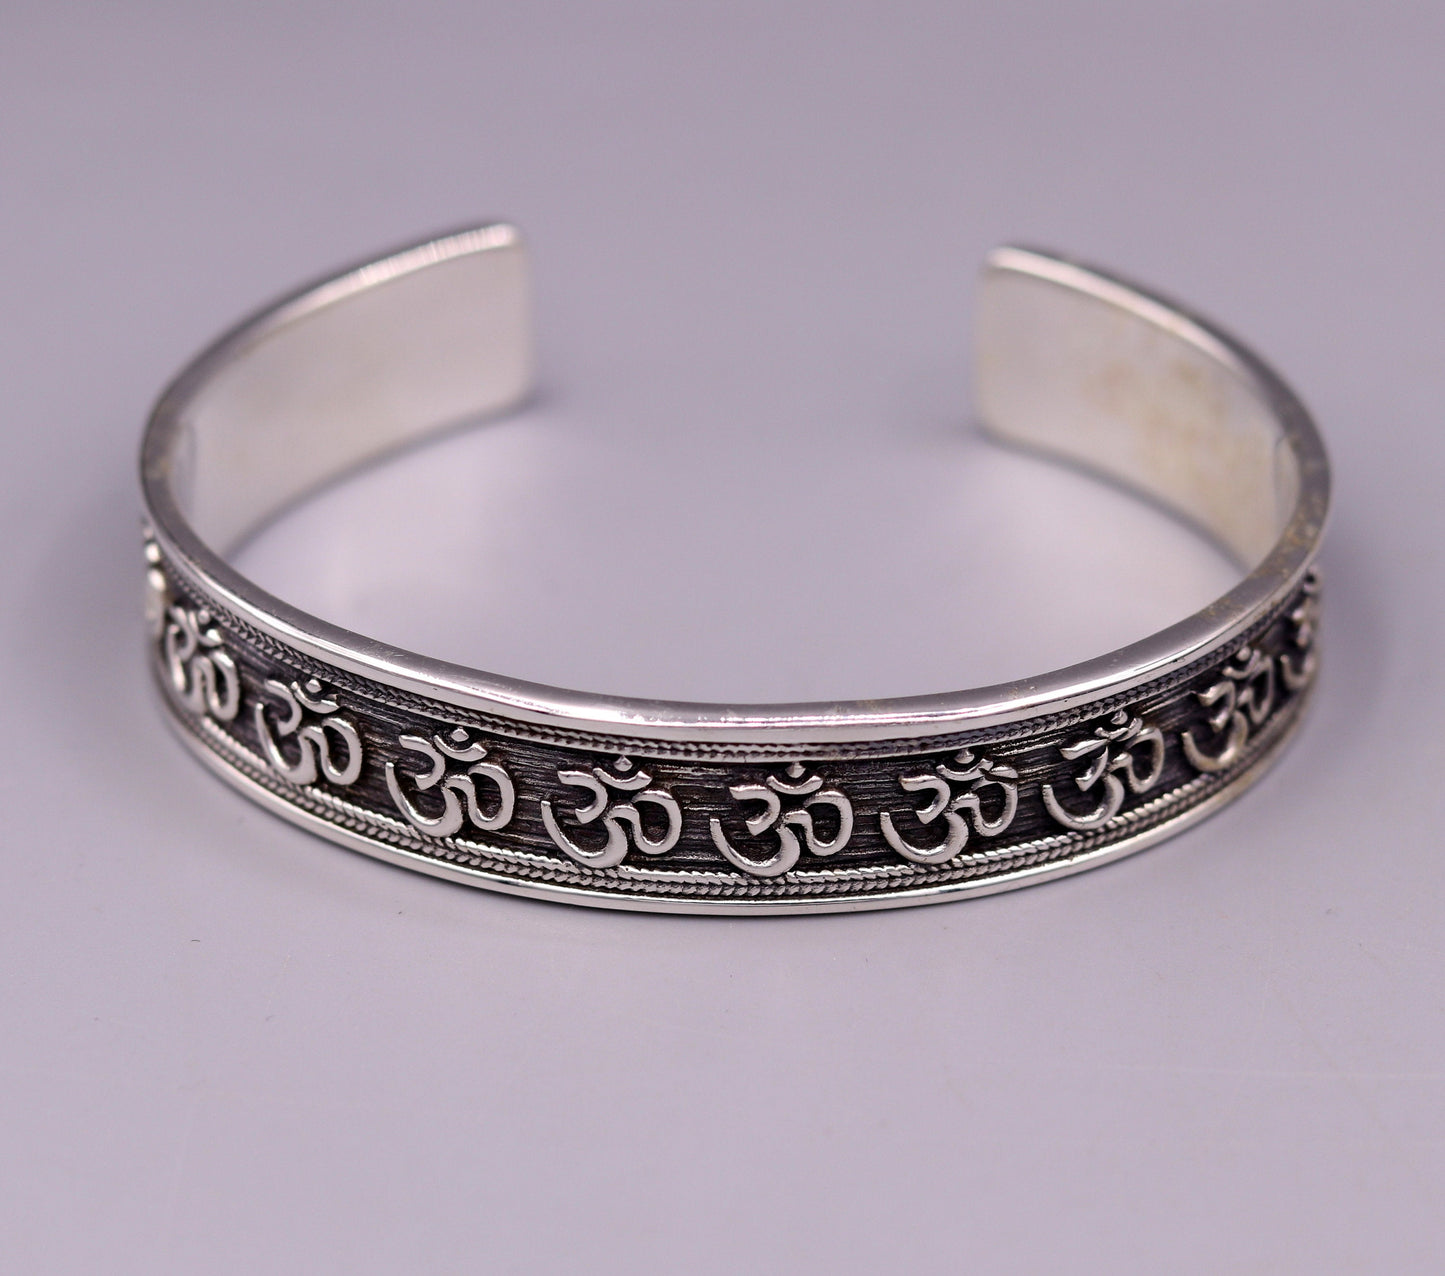 925 sterling Stylish handcrafted silver 'AUM' mantra bangle bracelet adjustable kada unisex ethnic stylish fashionable jewelry india nsk140 - TRIBAL ORNAMENTS